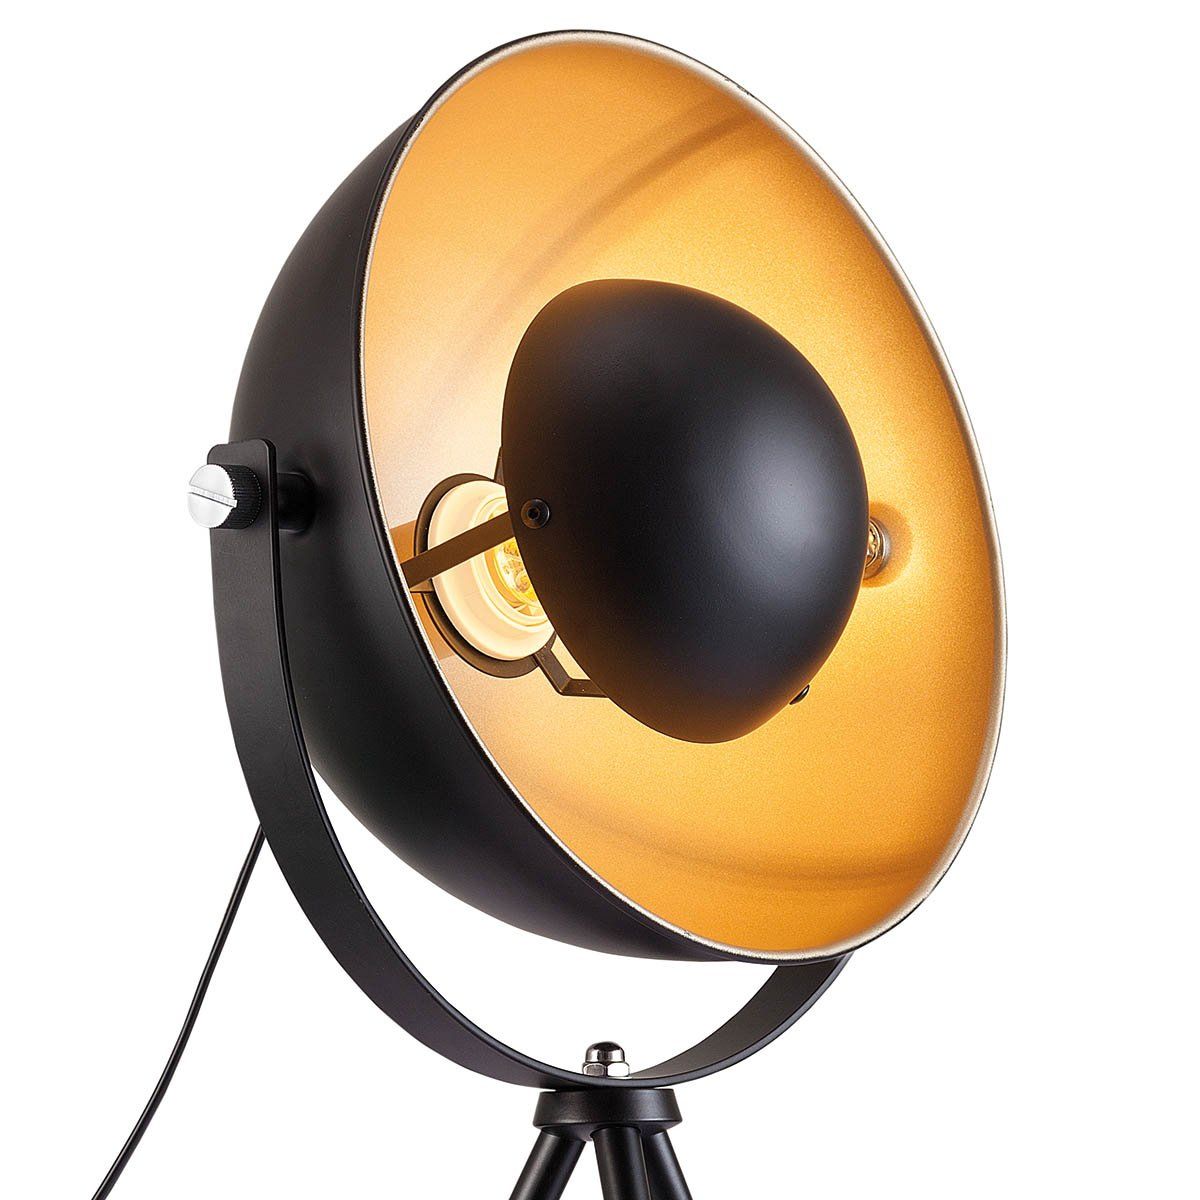 Lampe projecteur trépied FLINT noire mate intérieur doré en métal